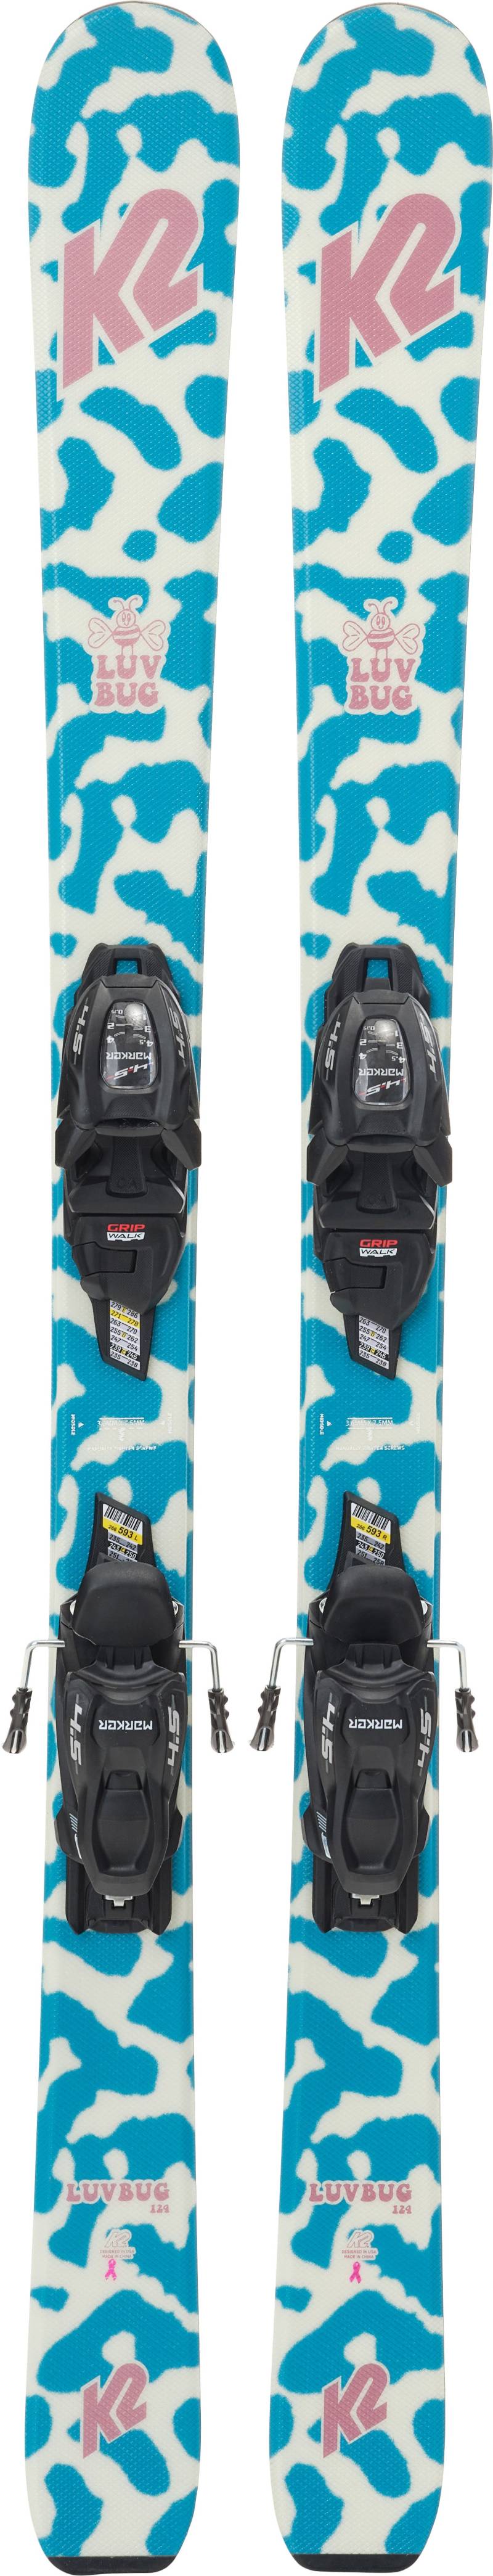 K2 Luv Bug Fdt 4.5 Skier inkl. Bindungen, 100 cm von K2